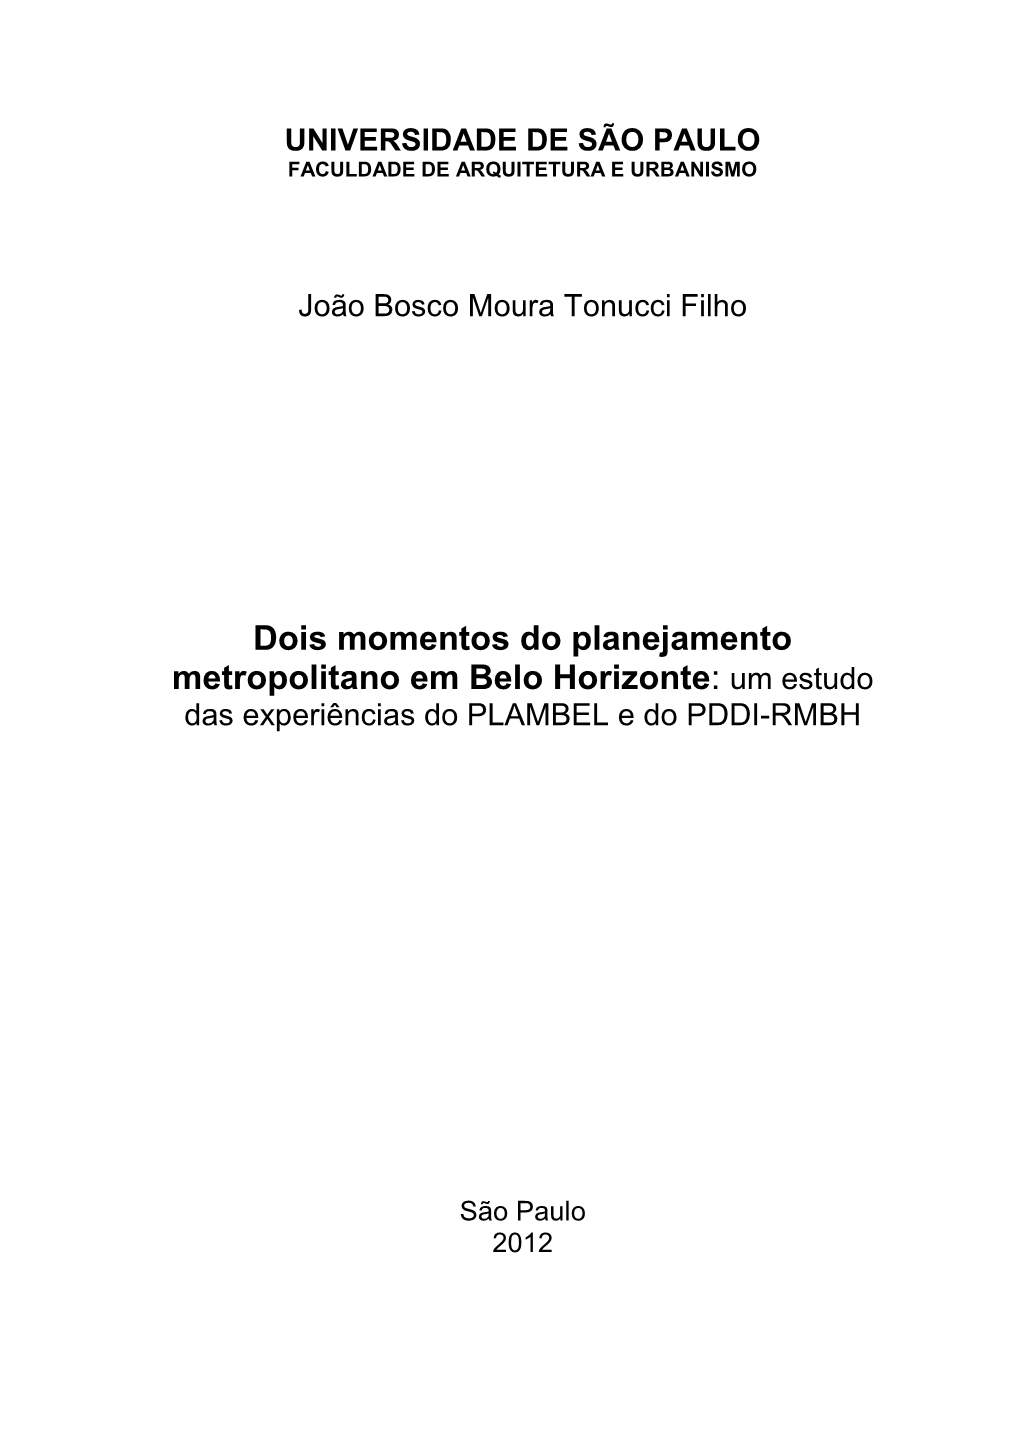 Dois Momentos Do Planejamento Metropolitano Em Belo Horizonte: Um Estudo Das Experiências Do PLAMBEL E Do PDDI-RMBH